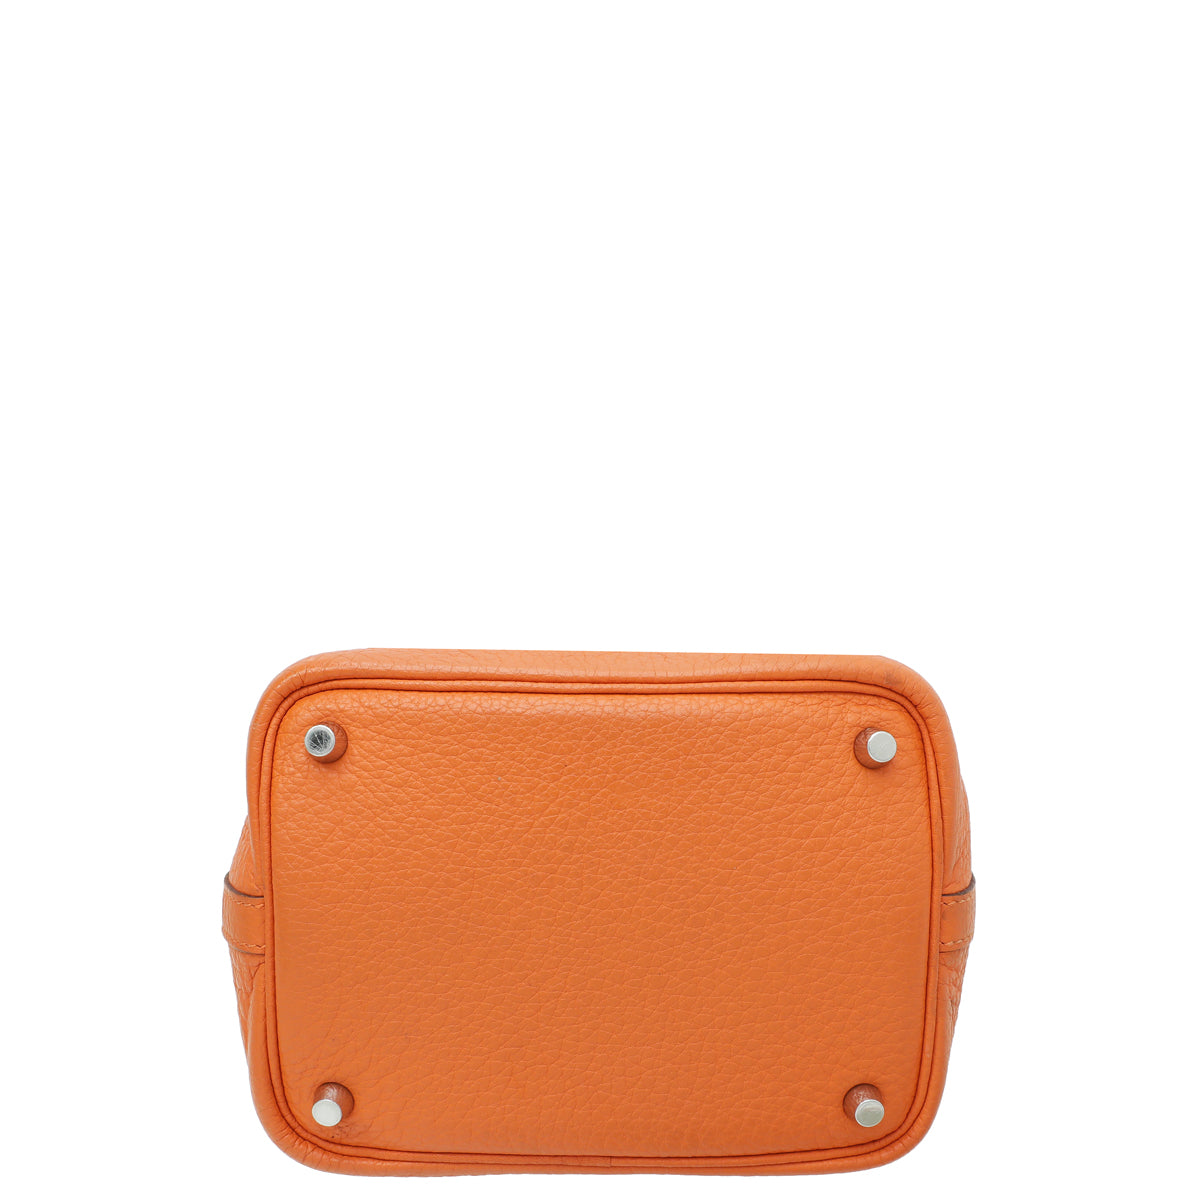 Hermes Orange Box Hermes Bag Lindy Hermes Bag Picotin Fashion 